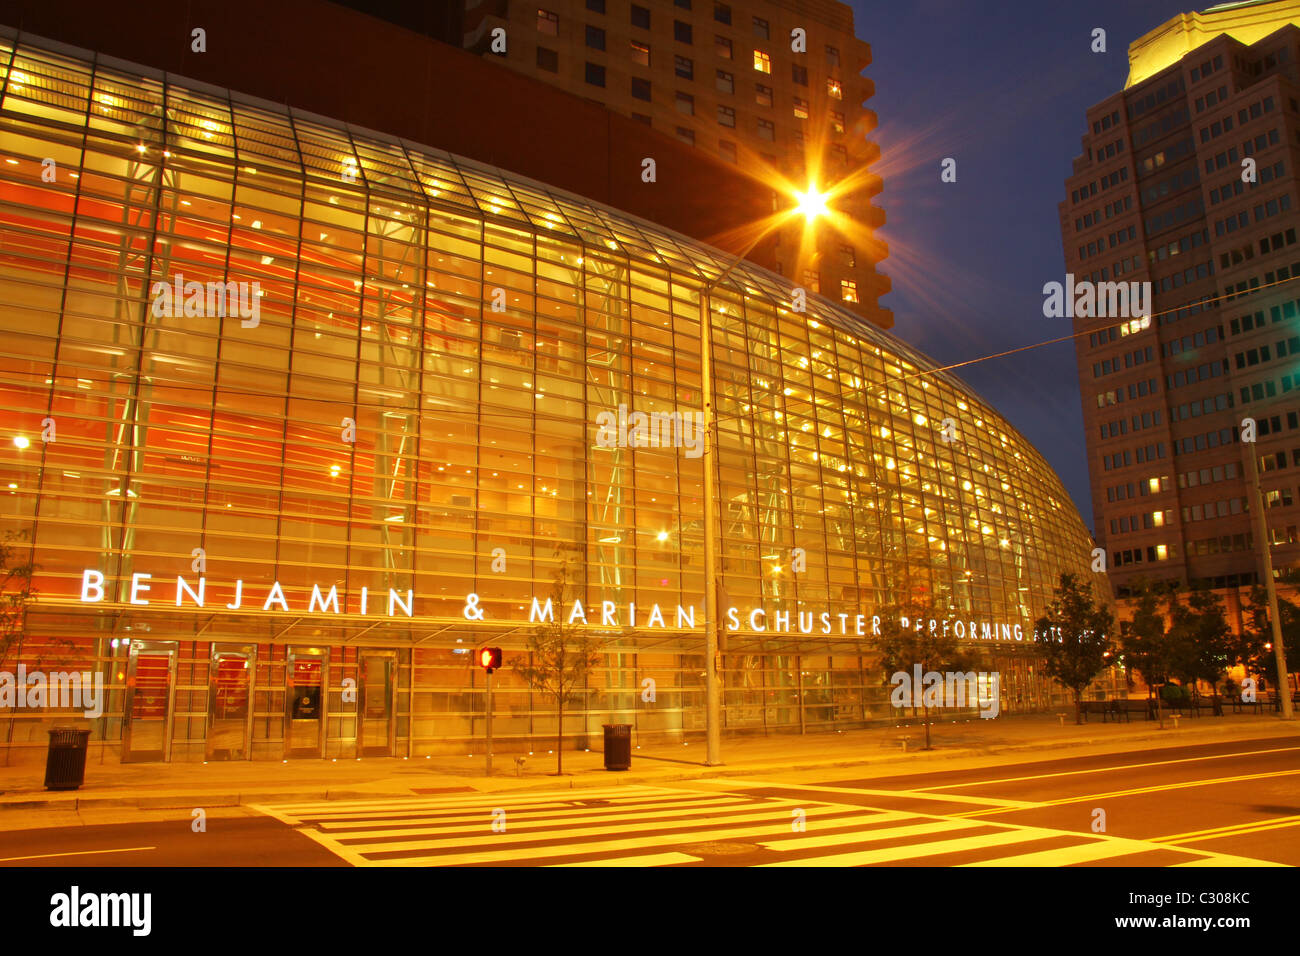 Schuster Centro. Benjamin e Marian Schuster Performing Arts Center di Dayton, Ohio, Stati Uniti d'America, al tramonto. Foto Stock